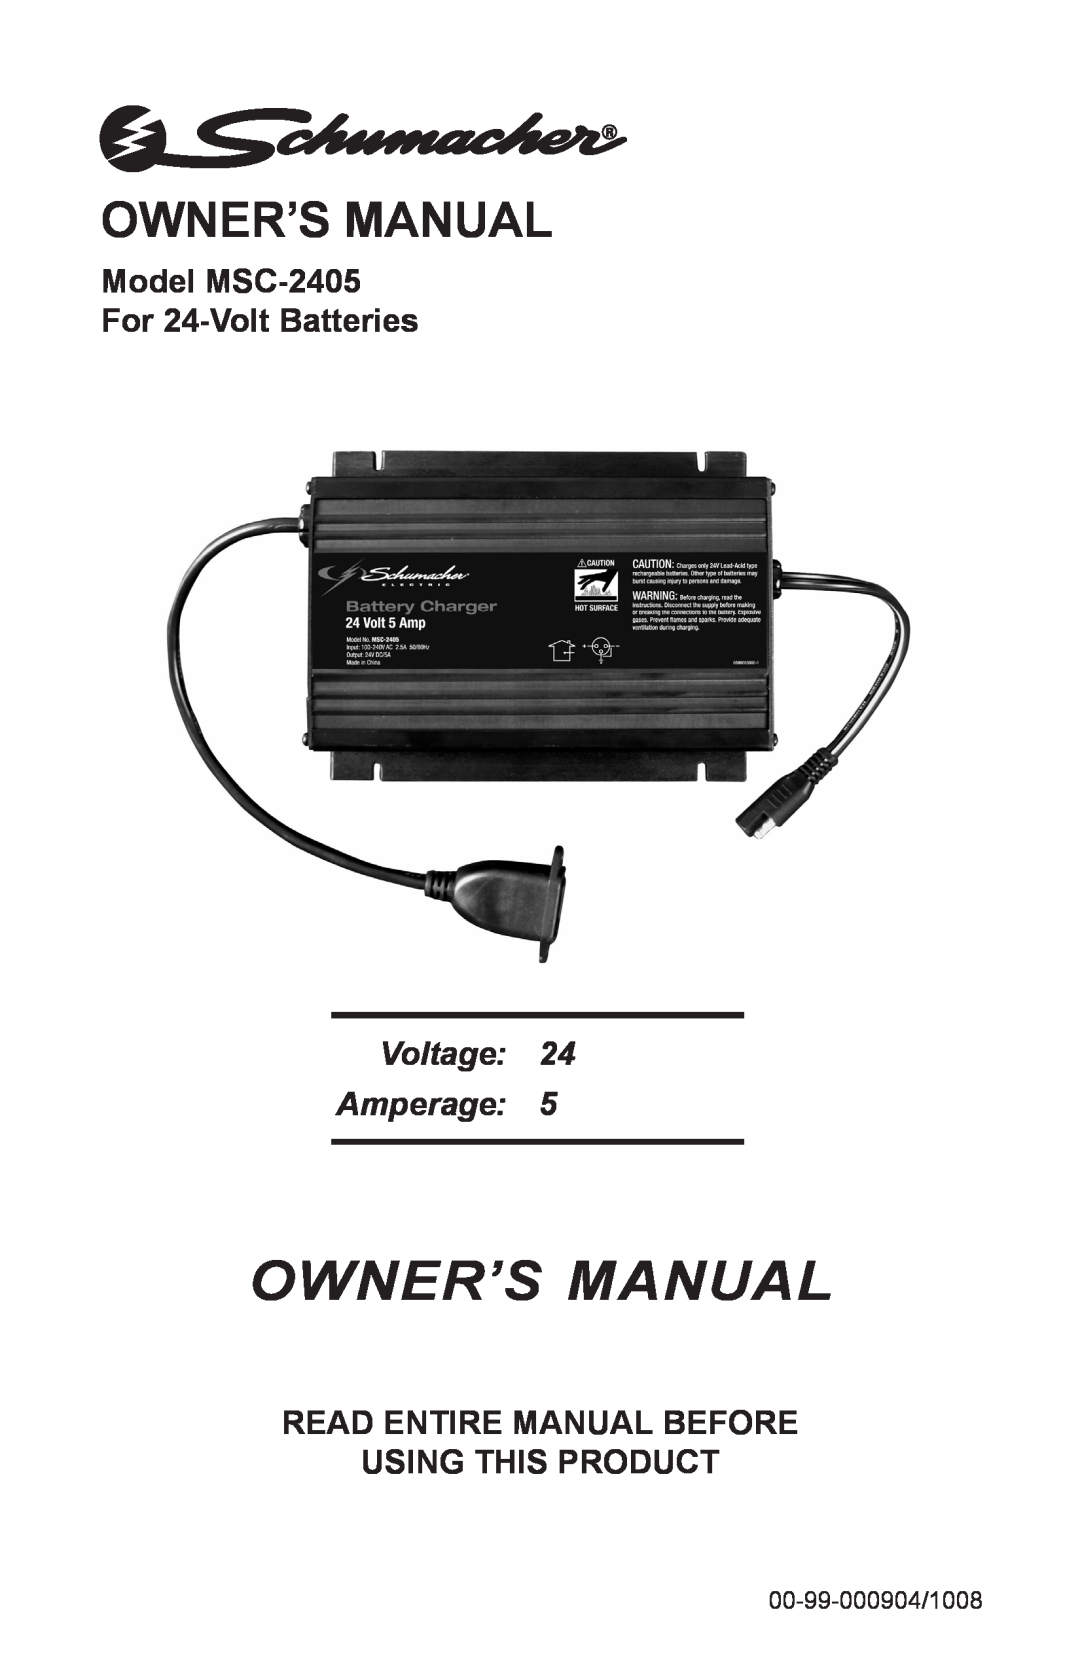 Schumacher owner manual Owner’s Manual, Owner’S Manual, Model MSC-2405 For 24-Volt Batteries, Voltage Amperage 